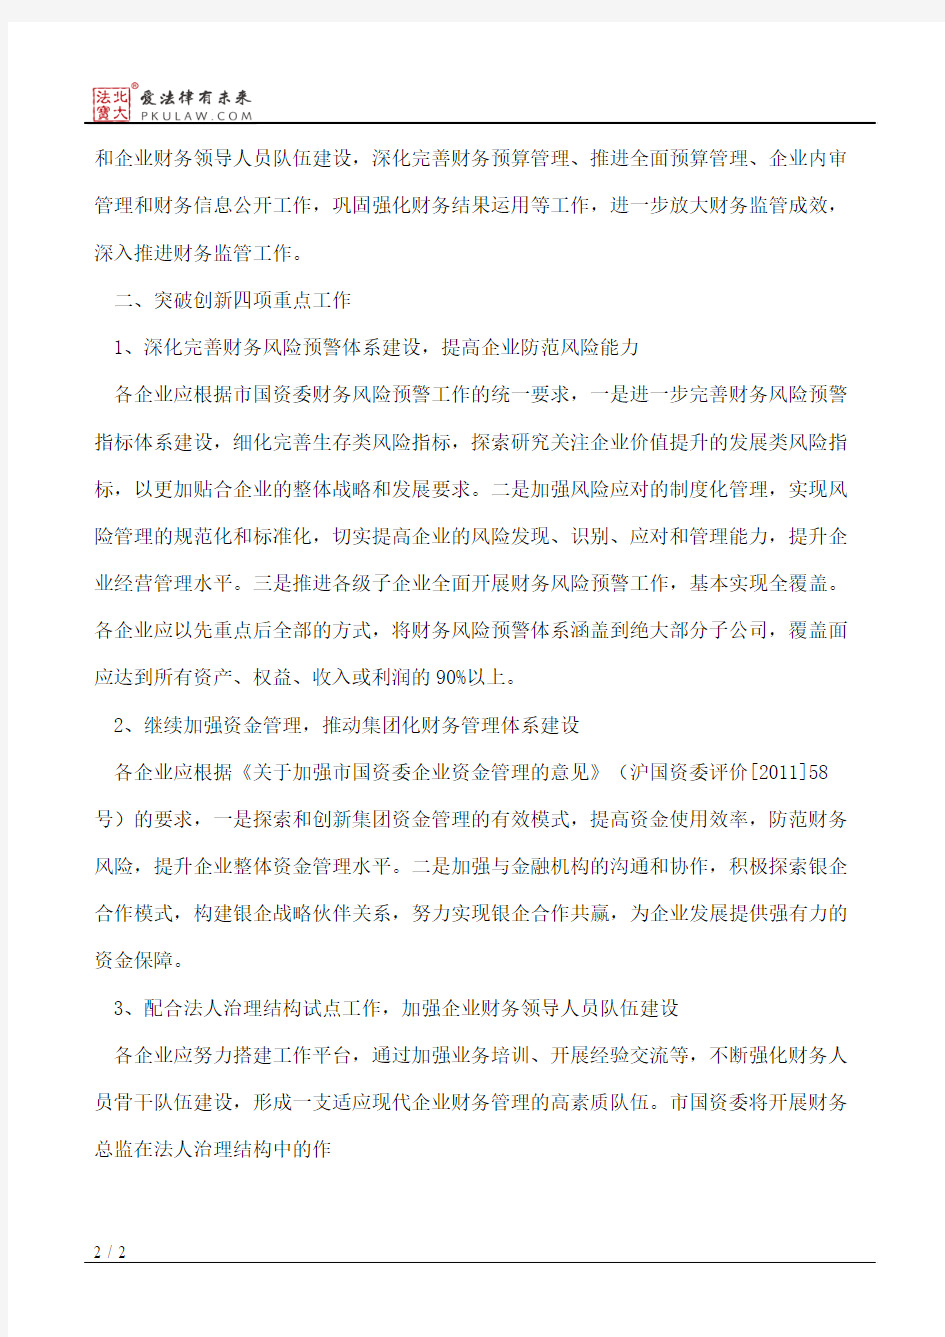 上海市国资委关于做好2011年度市属国有企业财务监管工作的通知